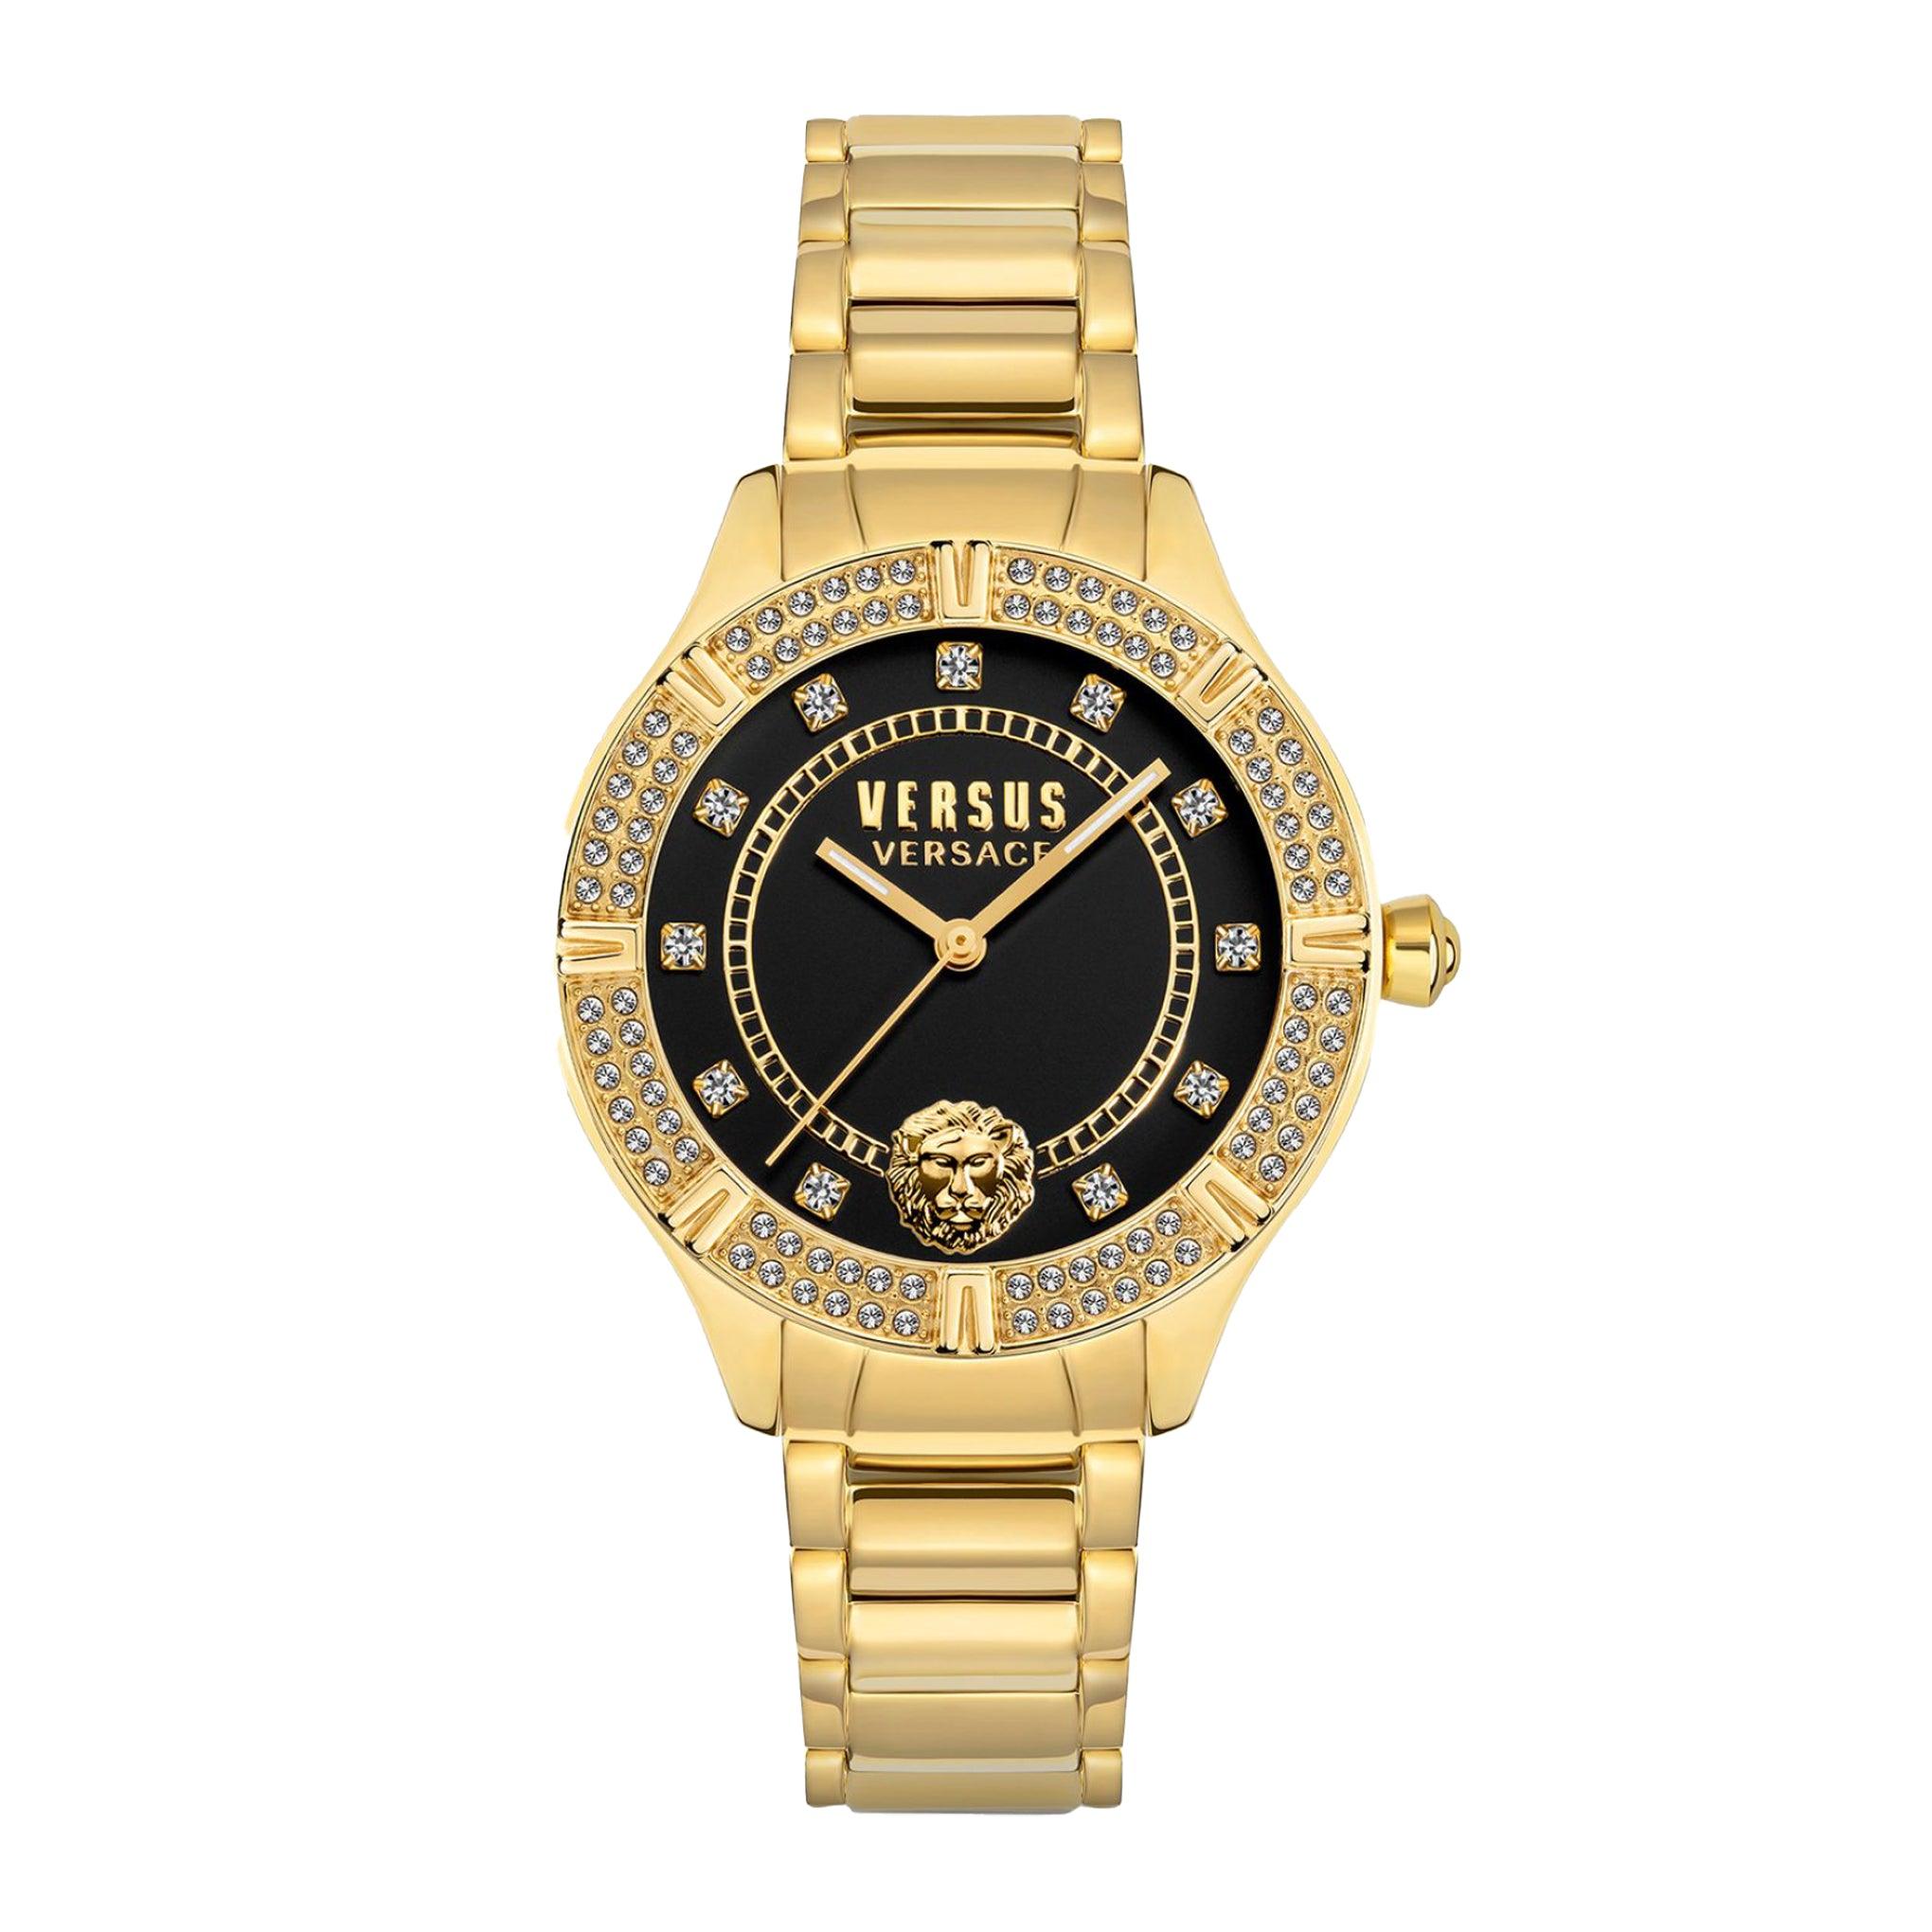 ساعة نسائية ستانلس ستيل ذهبي 36 مم فيرزاتشي  Versus Versace Women's Gold Stainless Steel Analog Watch